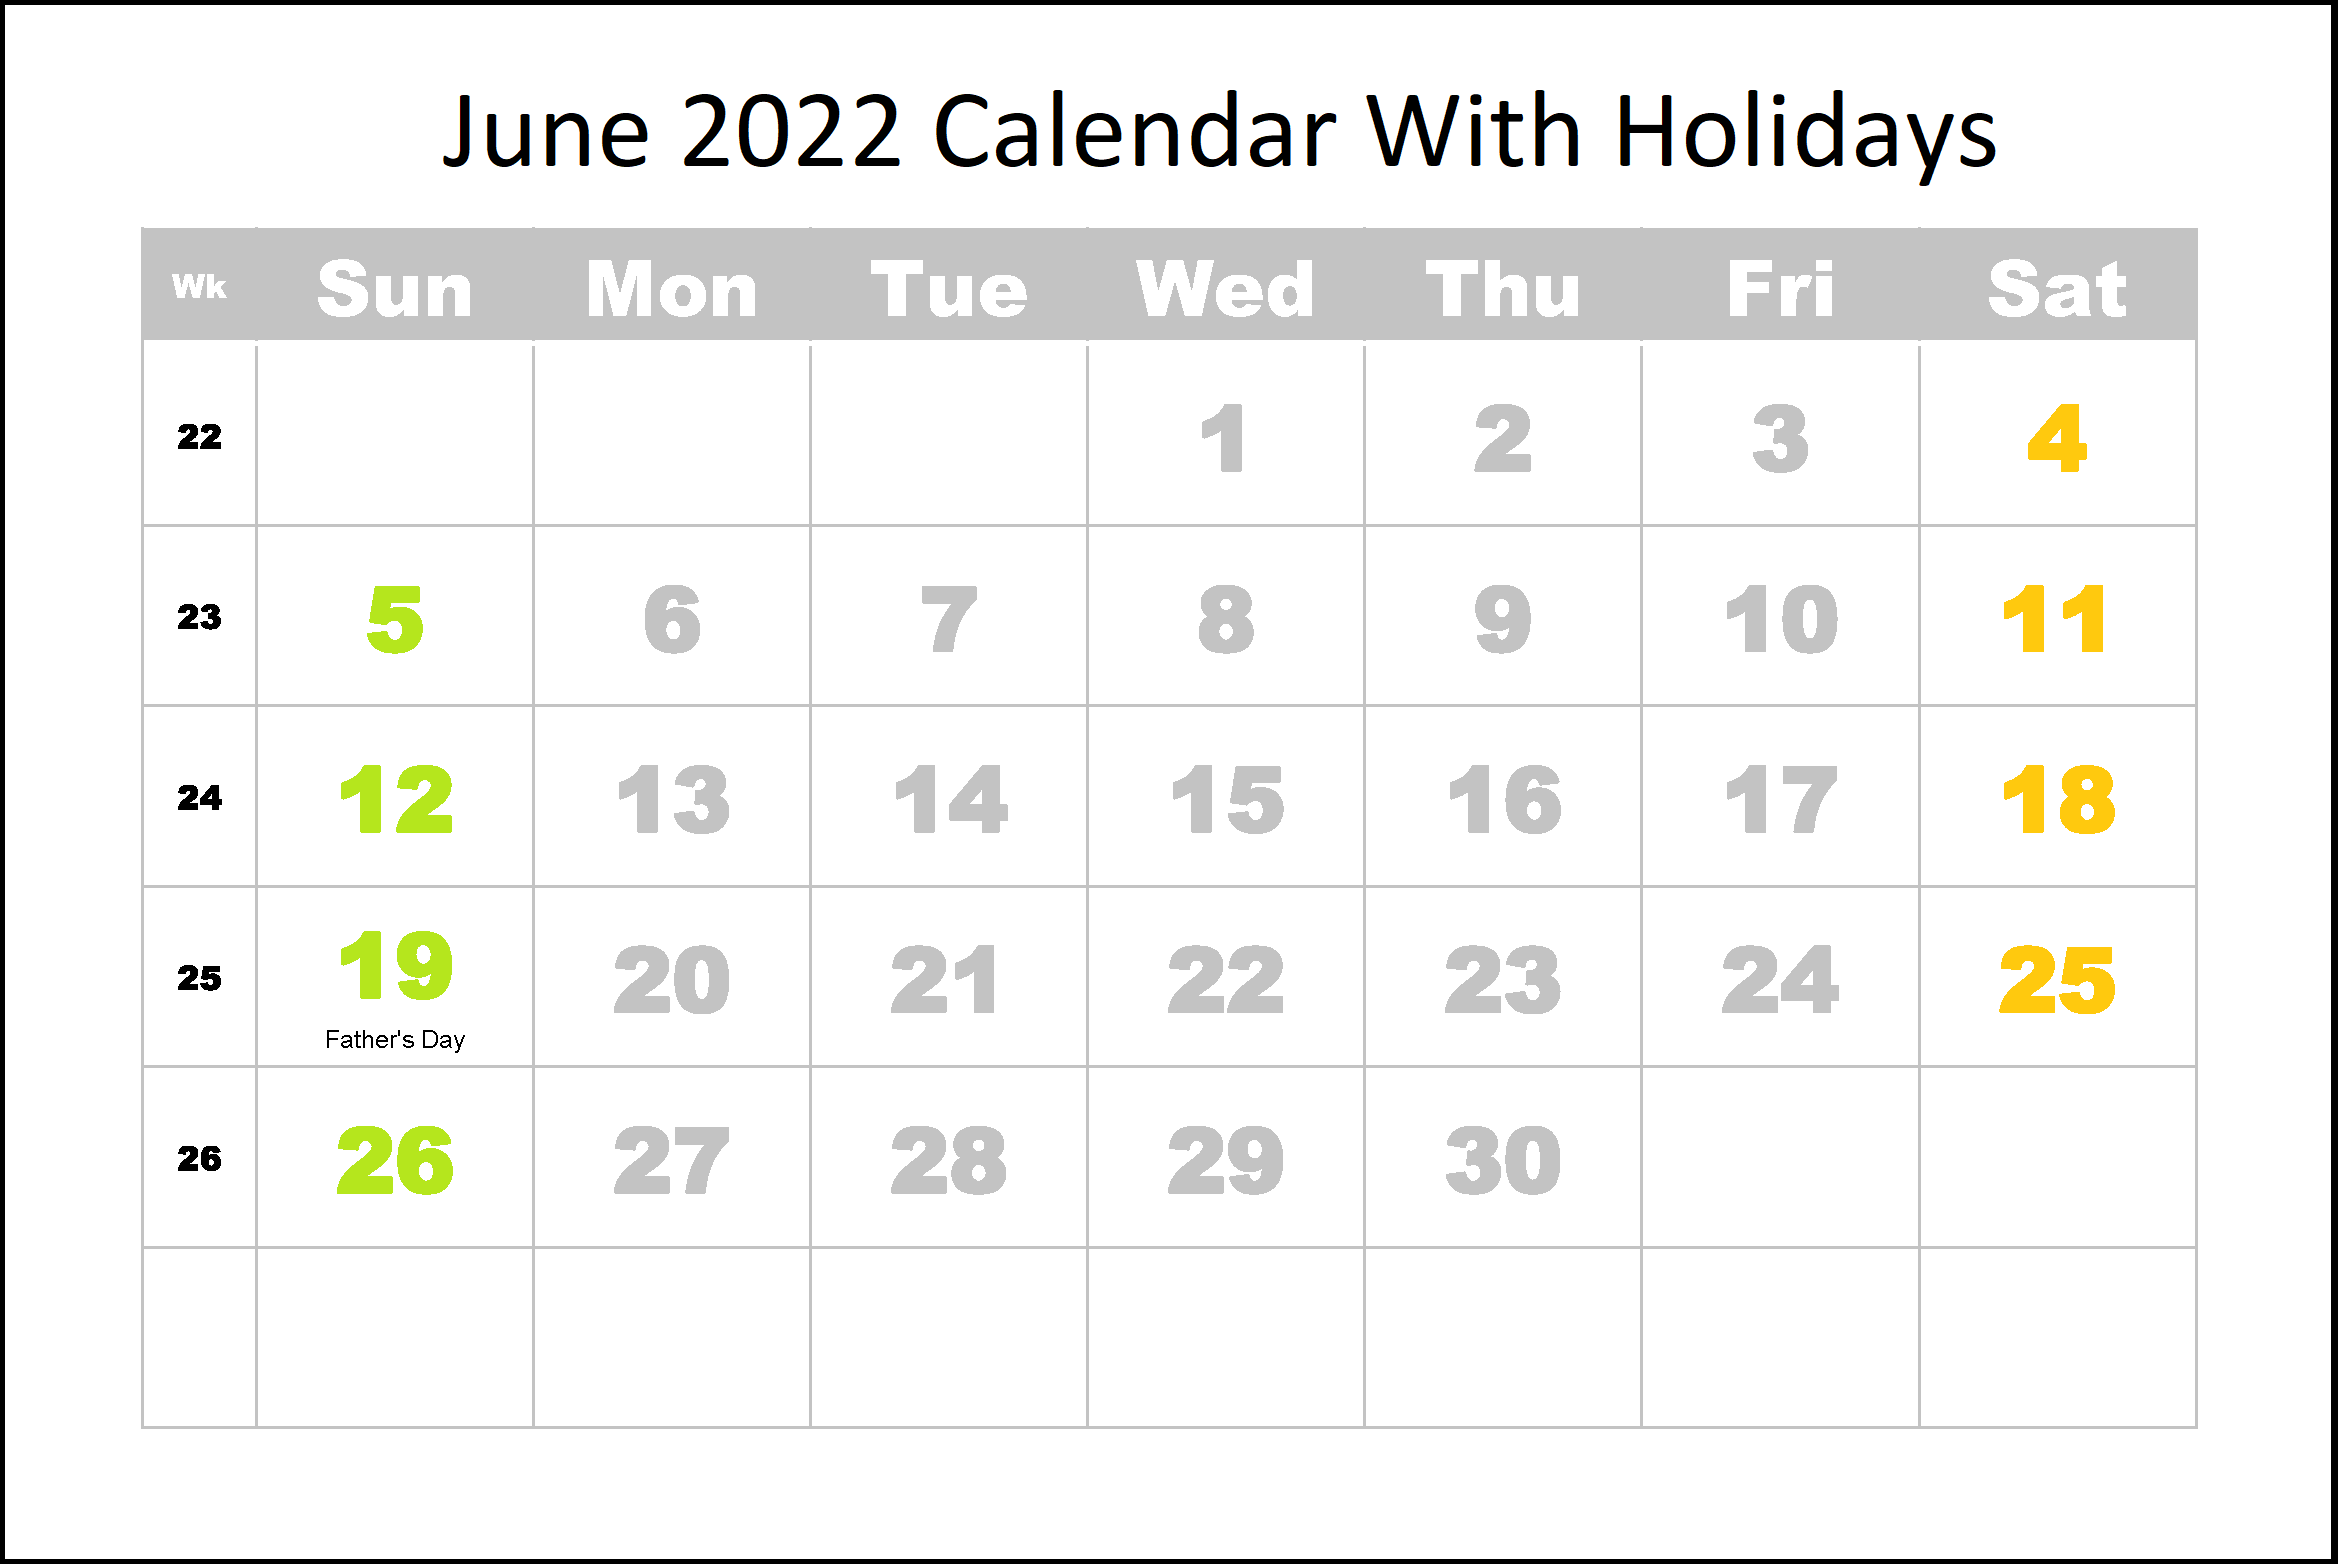 June 2022 Holidays Calendar Template